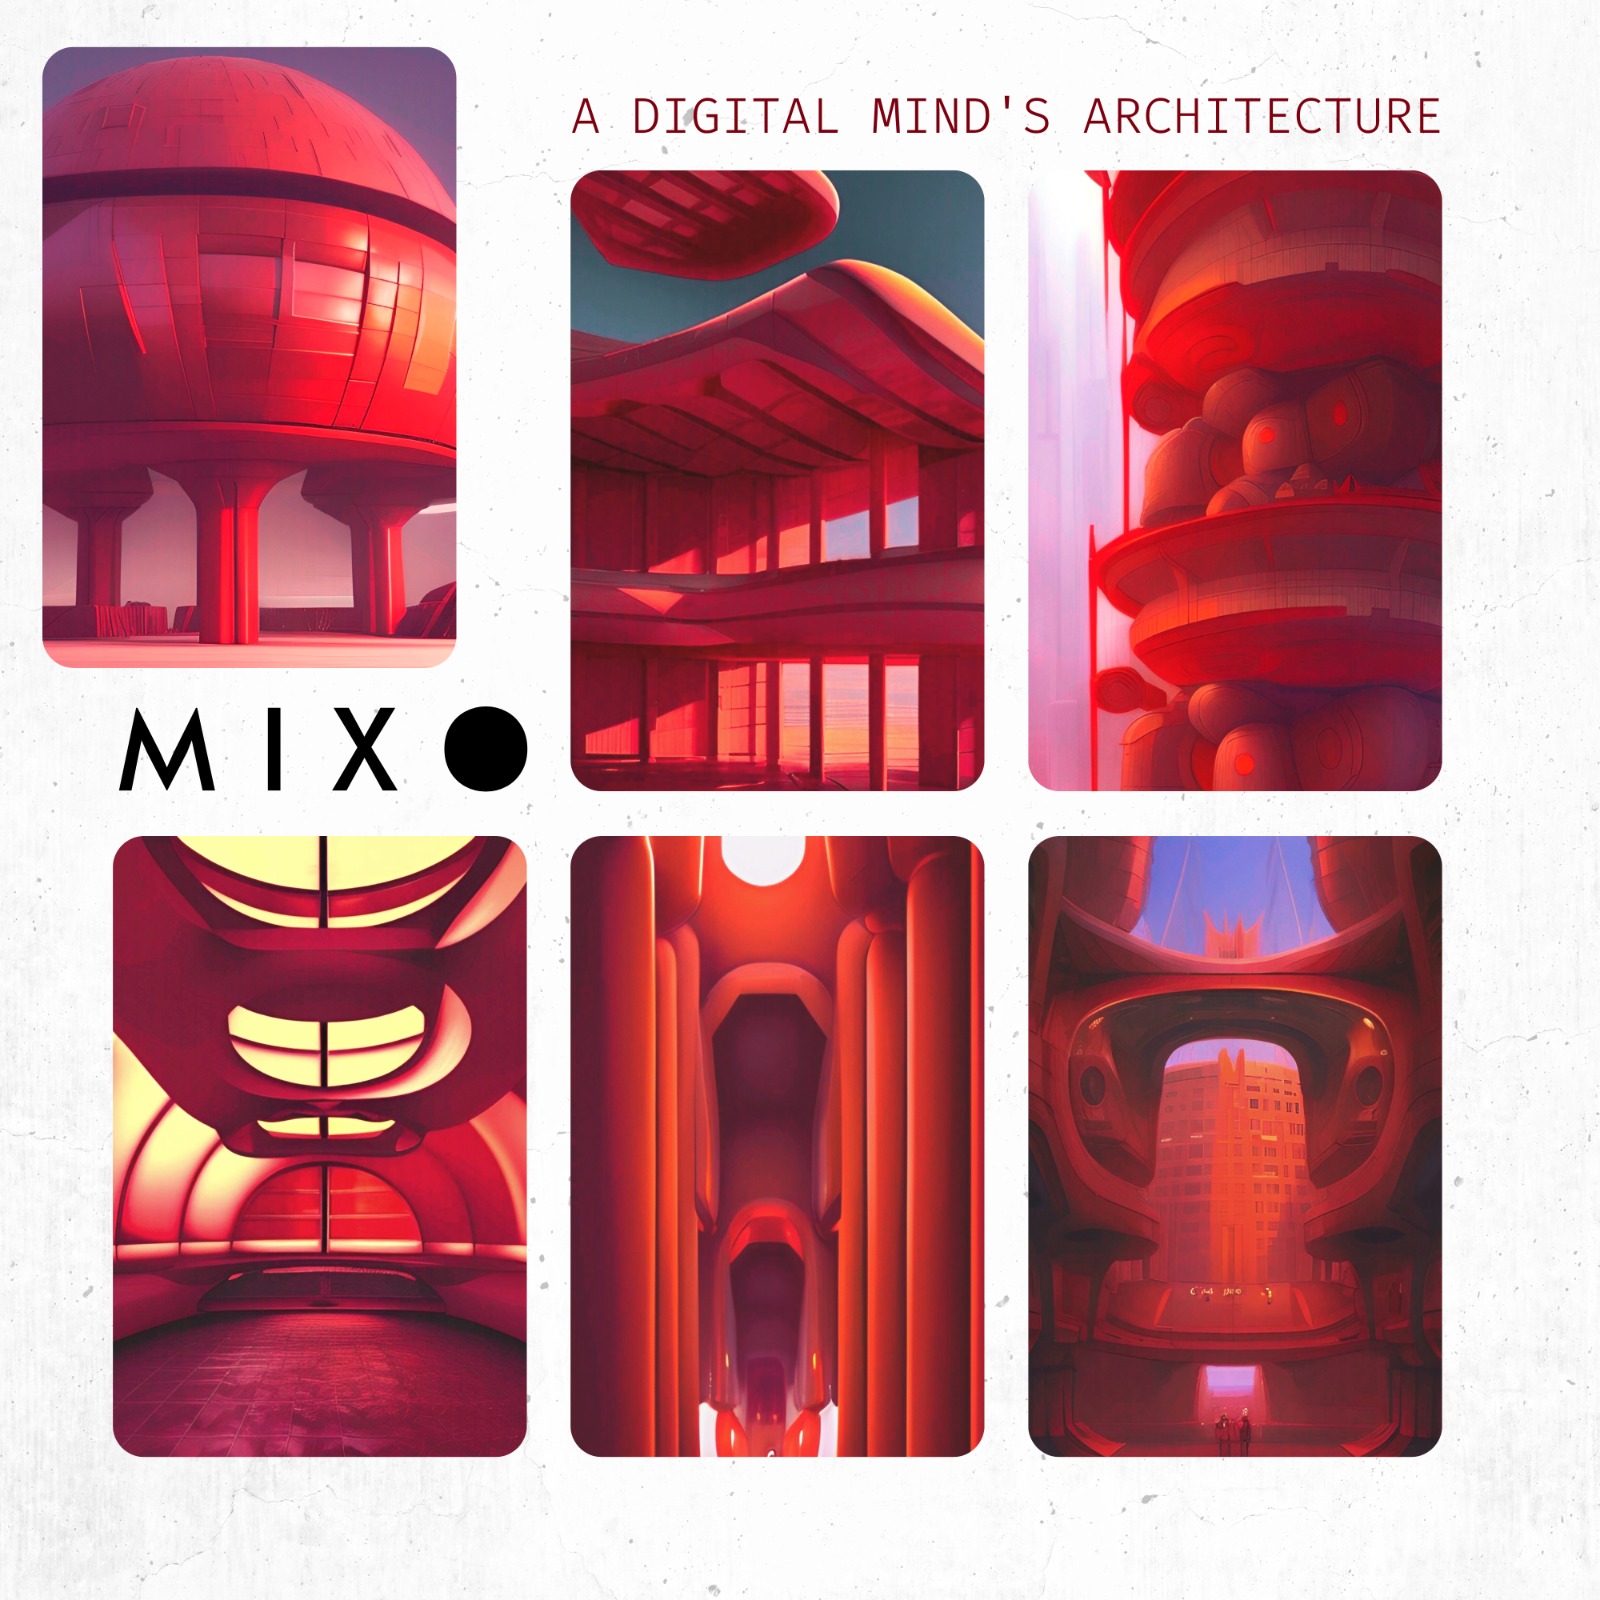 MIXO y su arquitectura de una mente digital